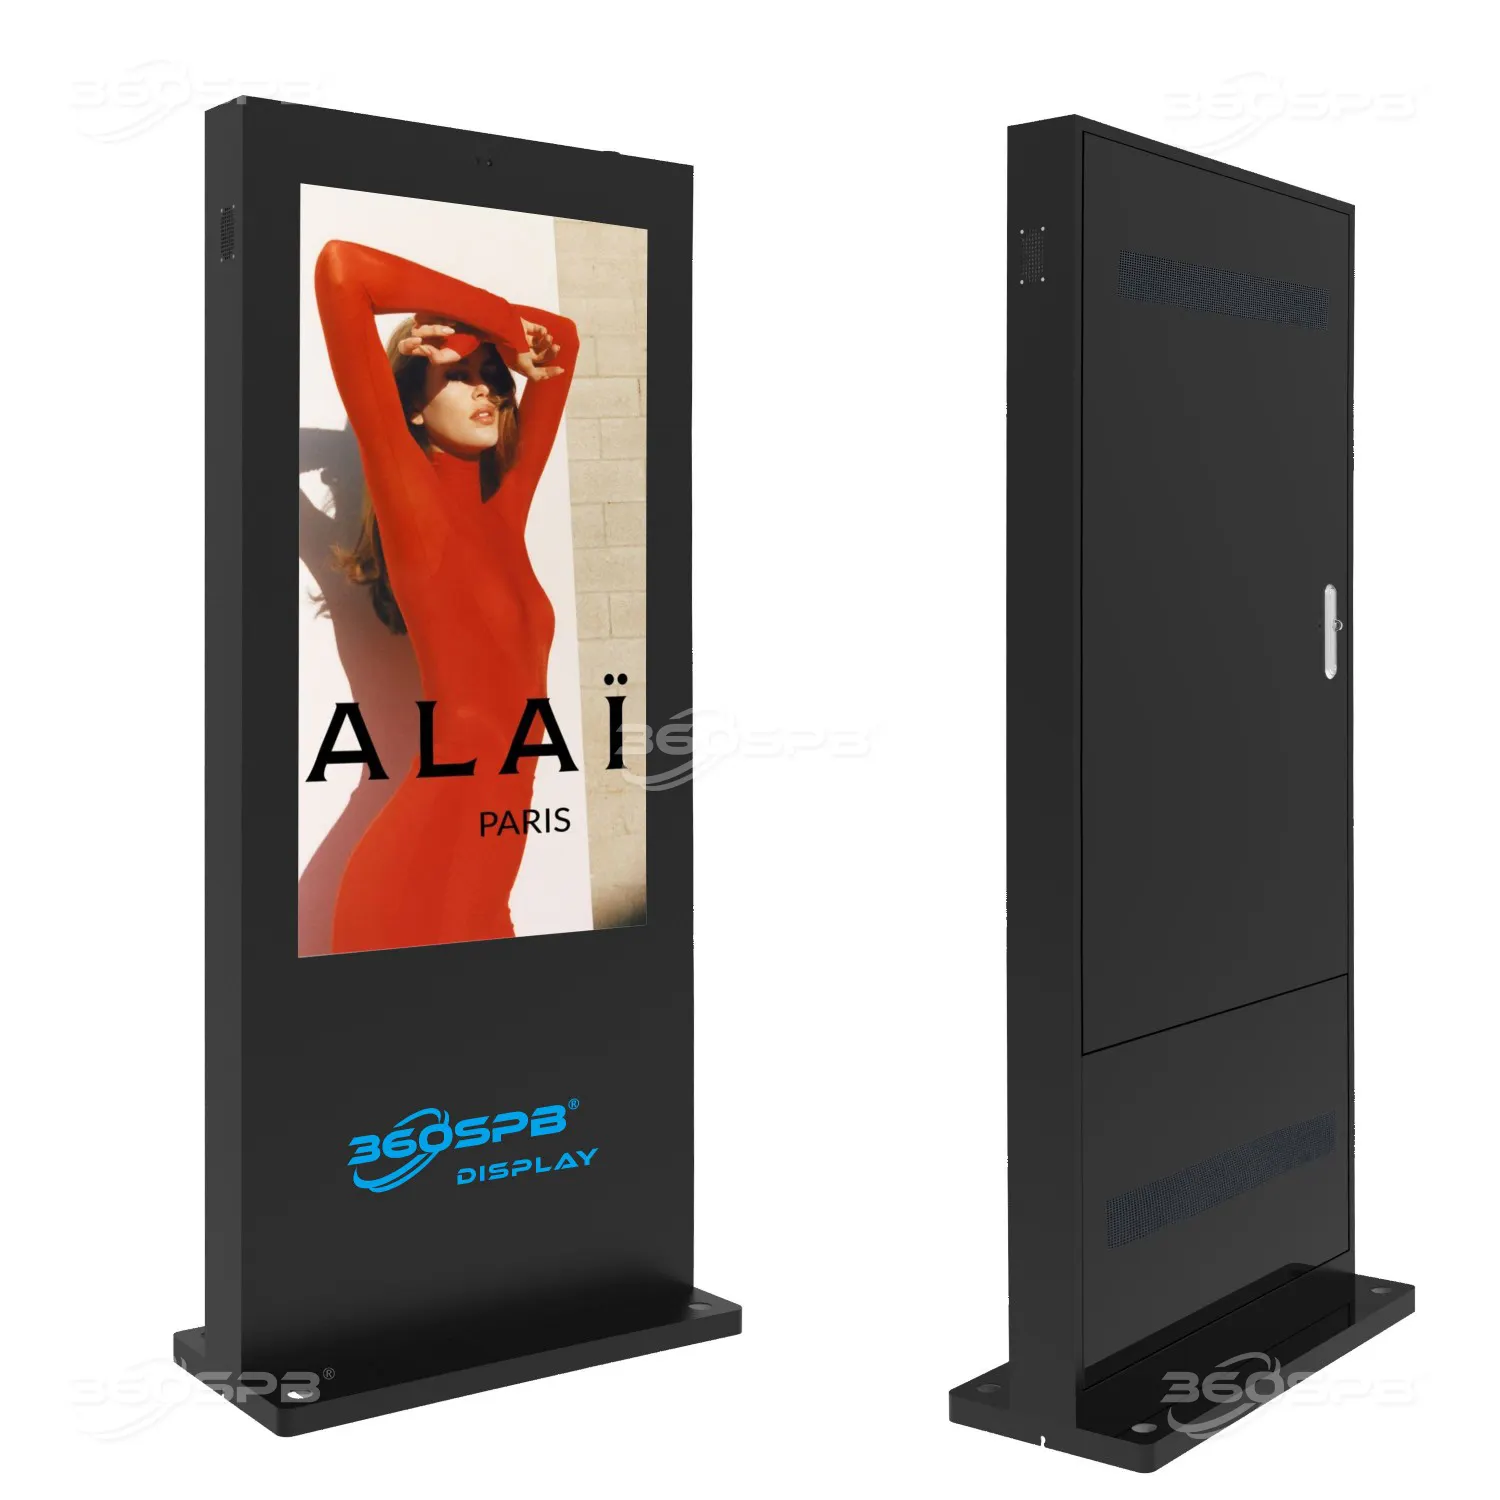 360SPB | Lantai telanjang berdiri telanjang layar LCD 32 ", sistem pendingin udara, tahan Air IP65